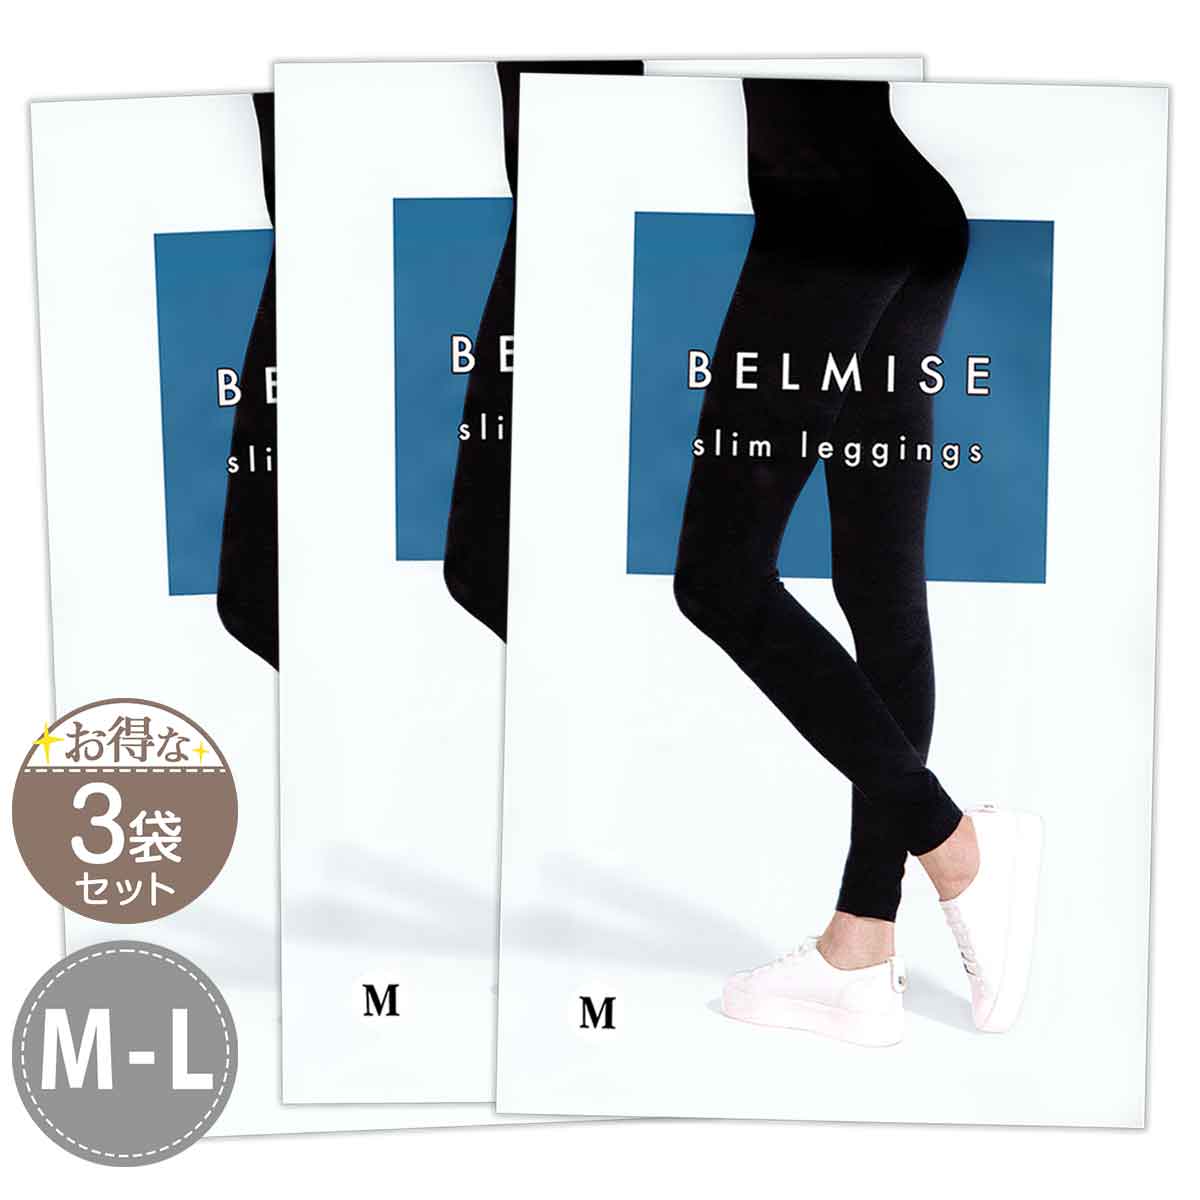 3袋セット 】 ベルミス スリムレギンス BELMISE Slim leggings M-L